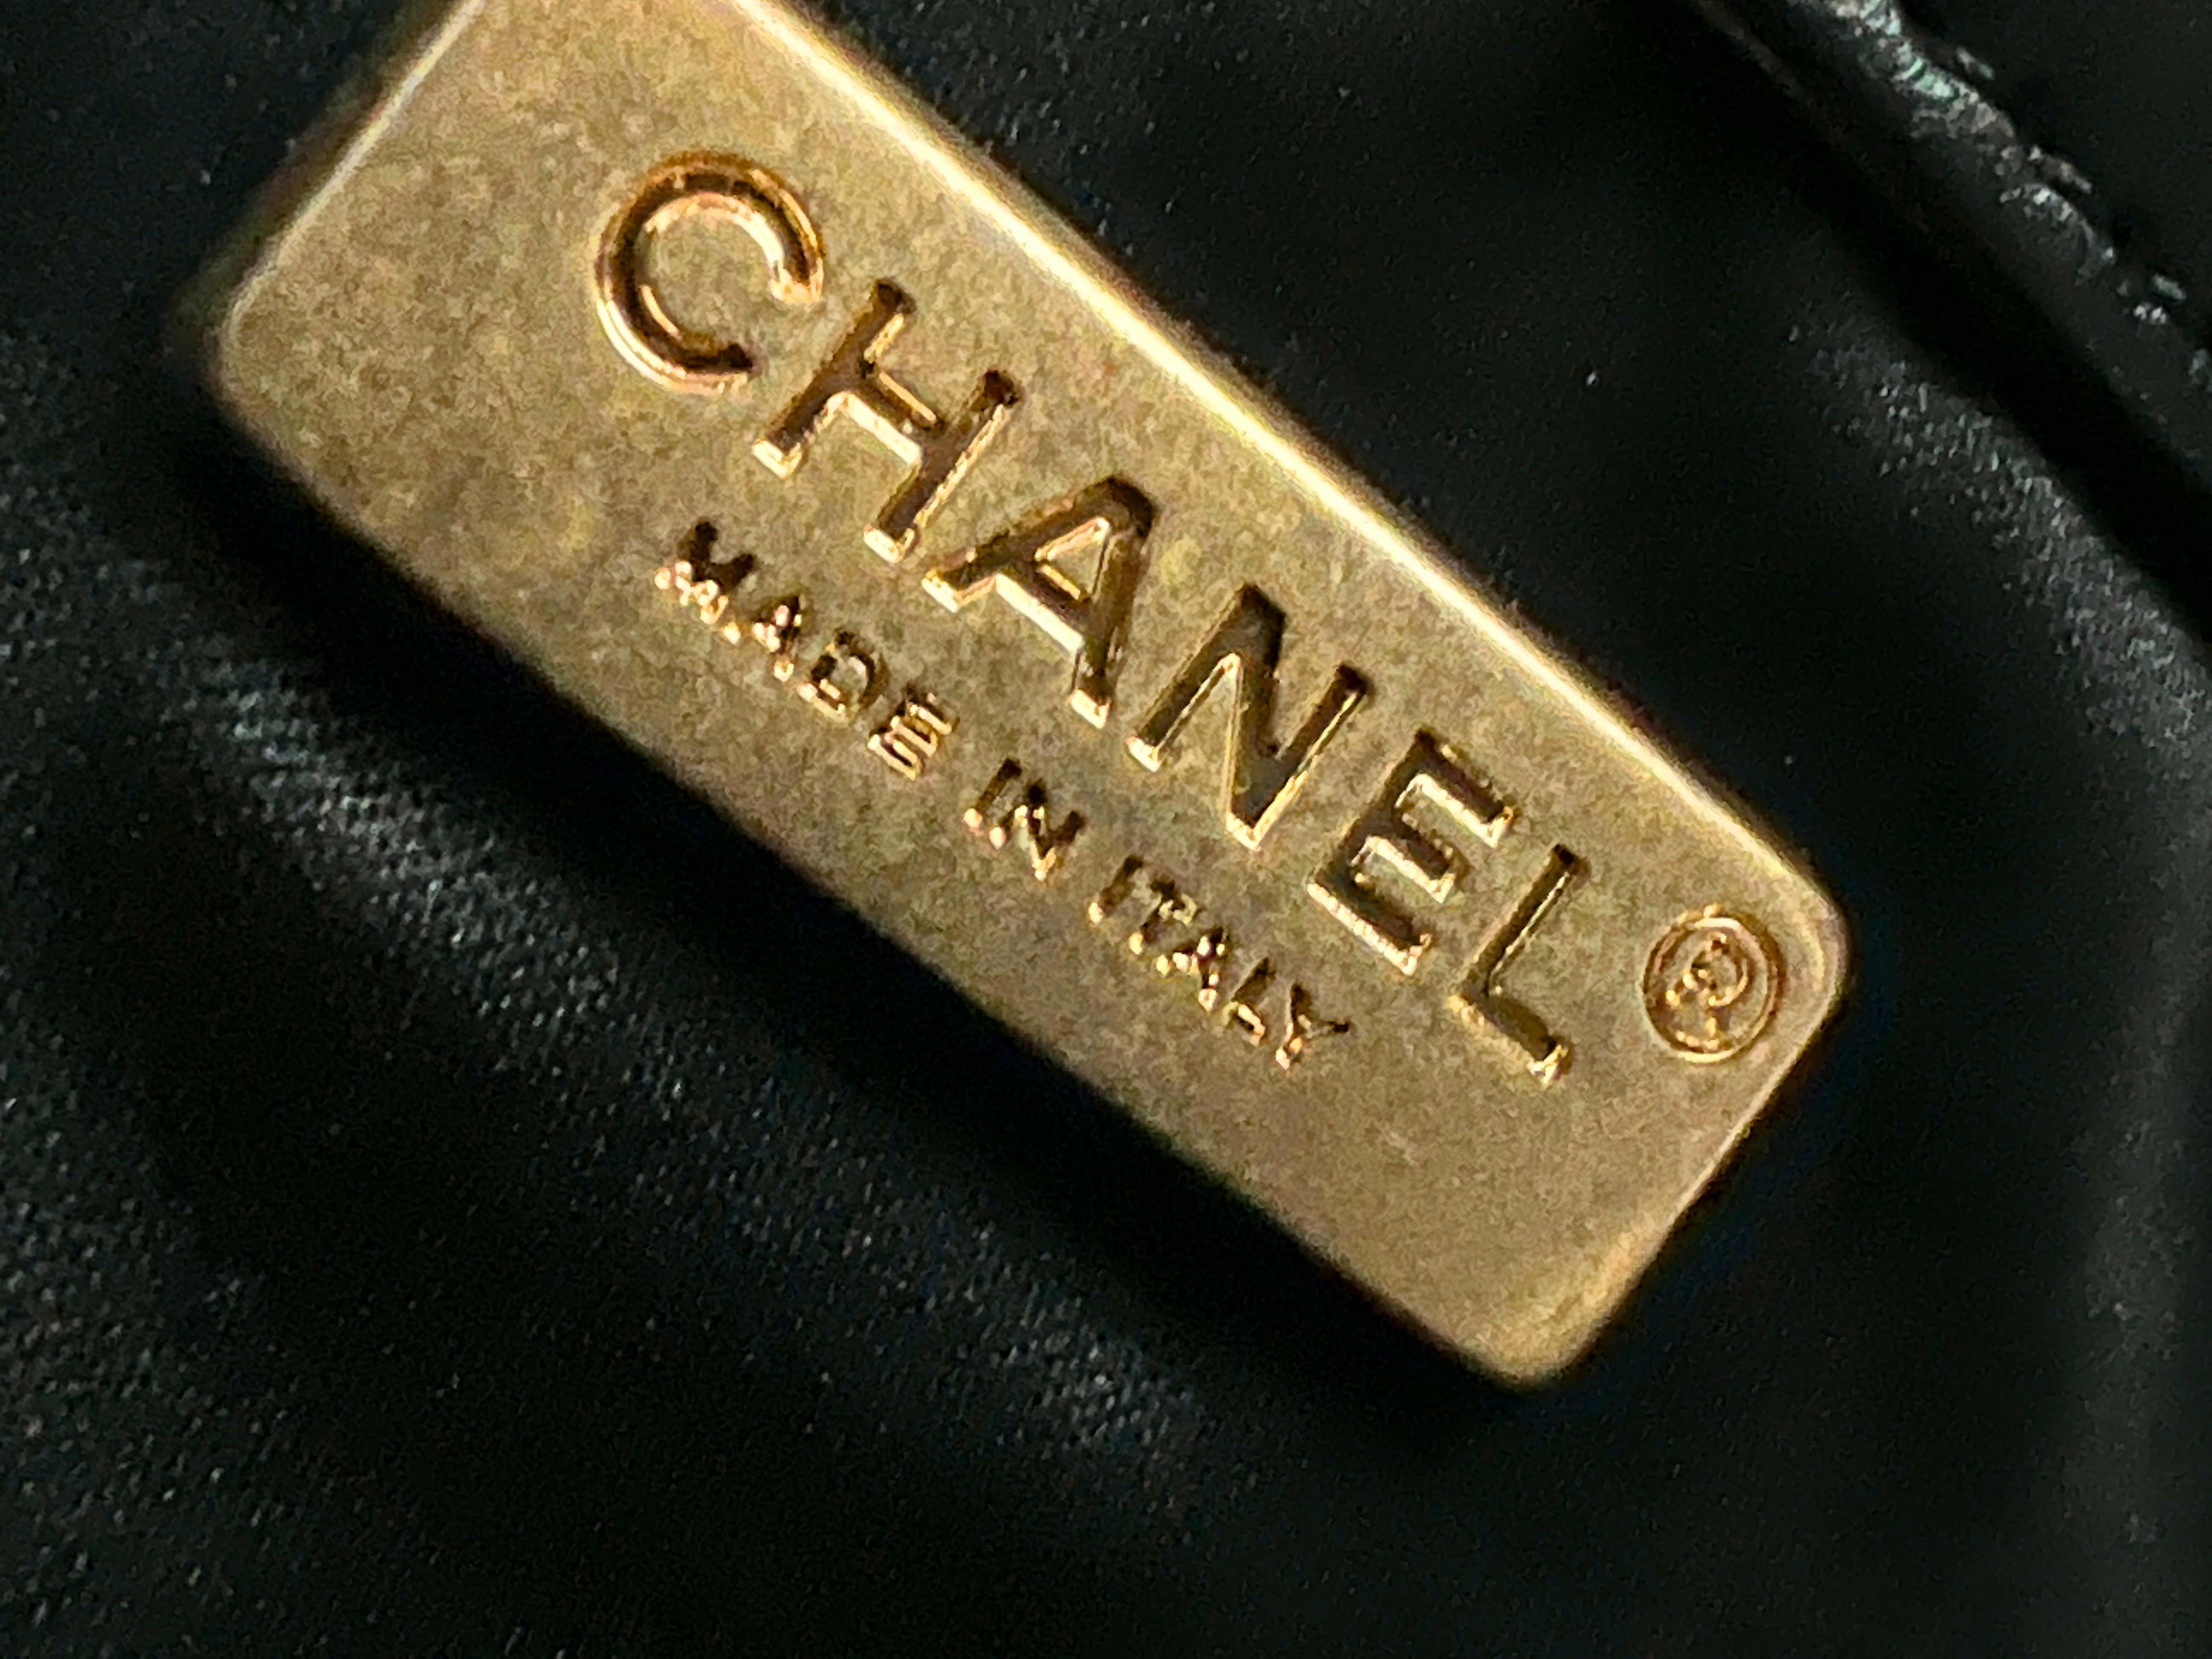 Chanel Super Rare Dare To Disturb Sequin Flap Bag For Sale 7